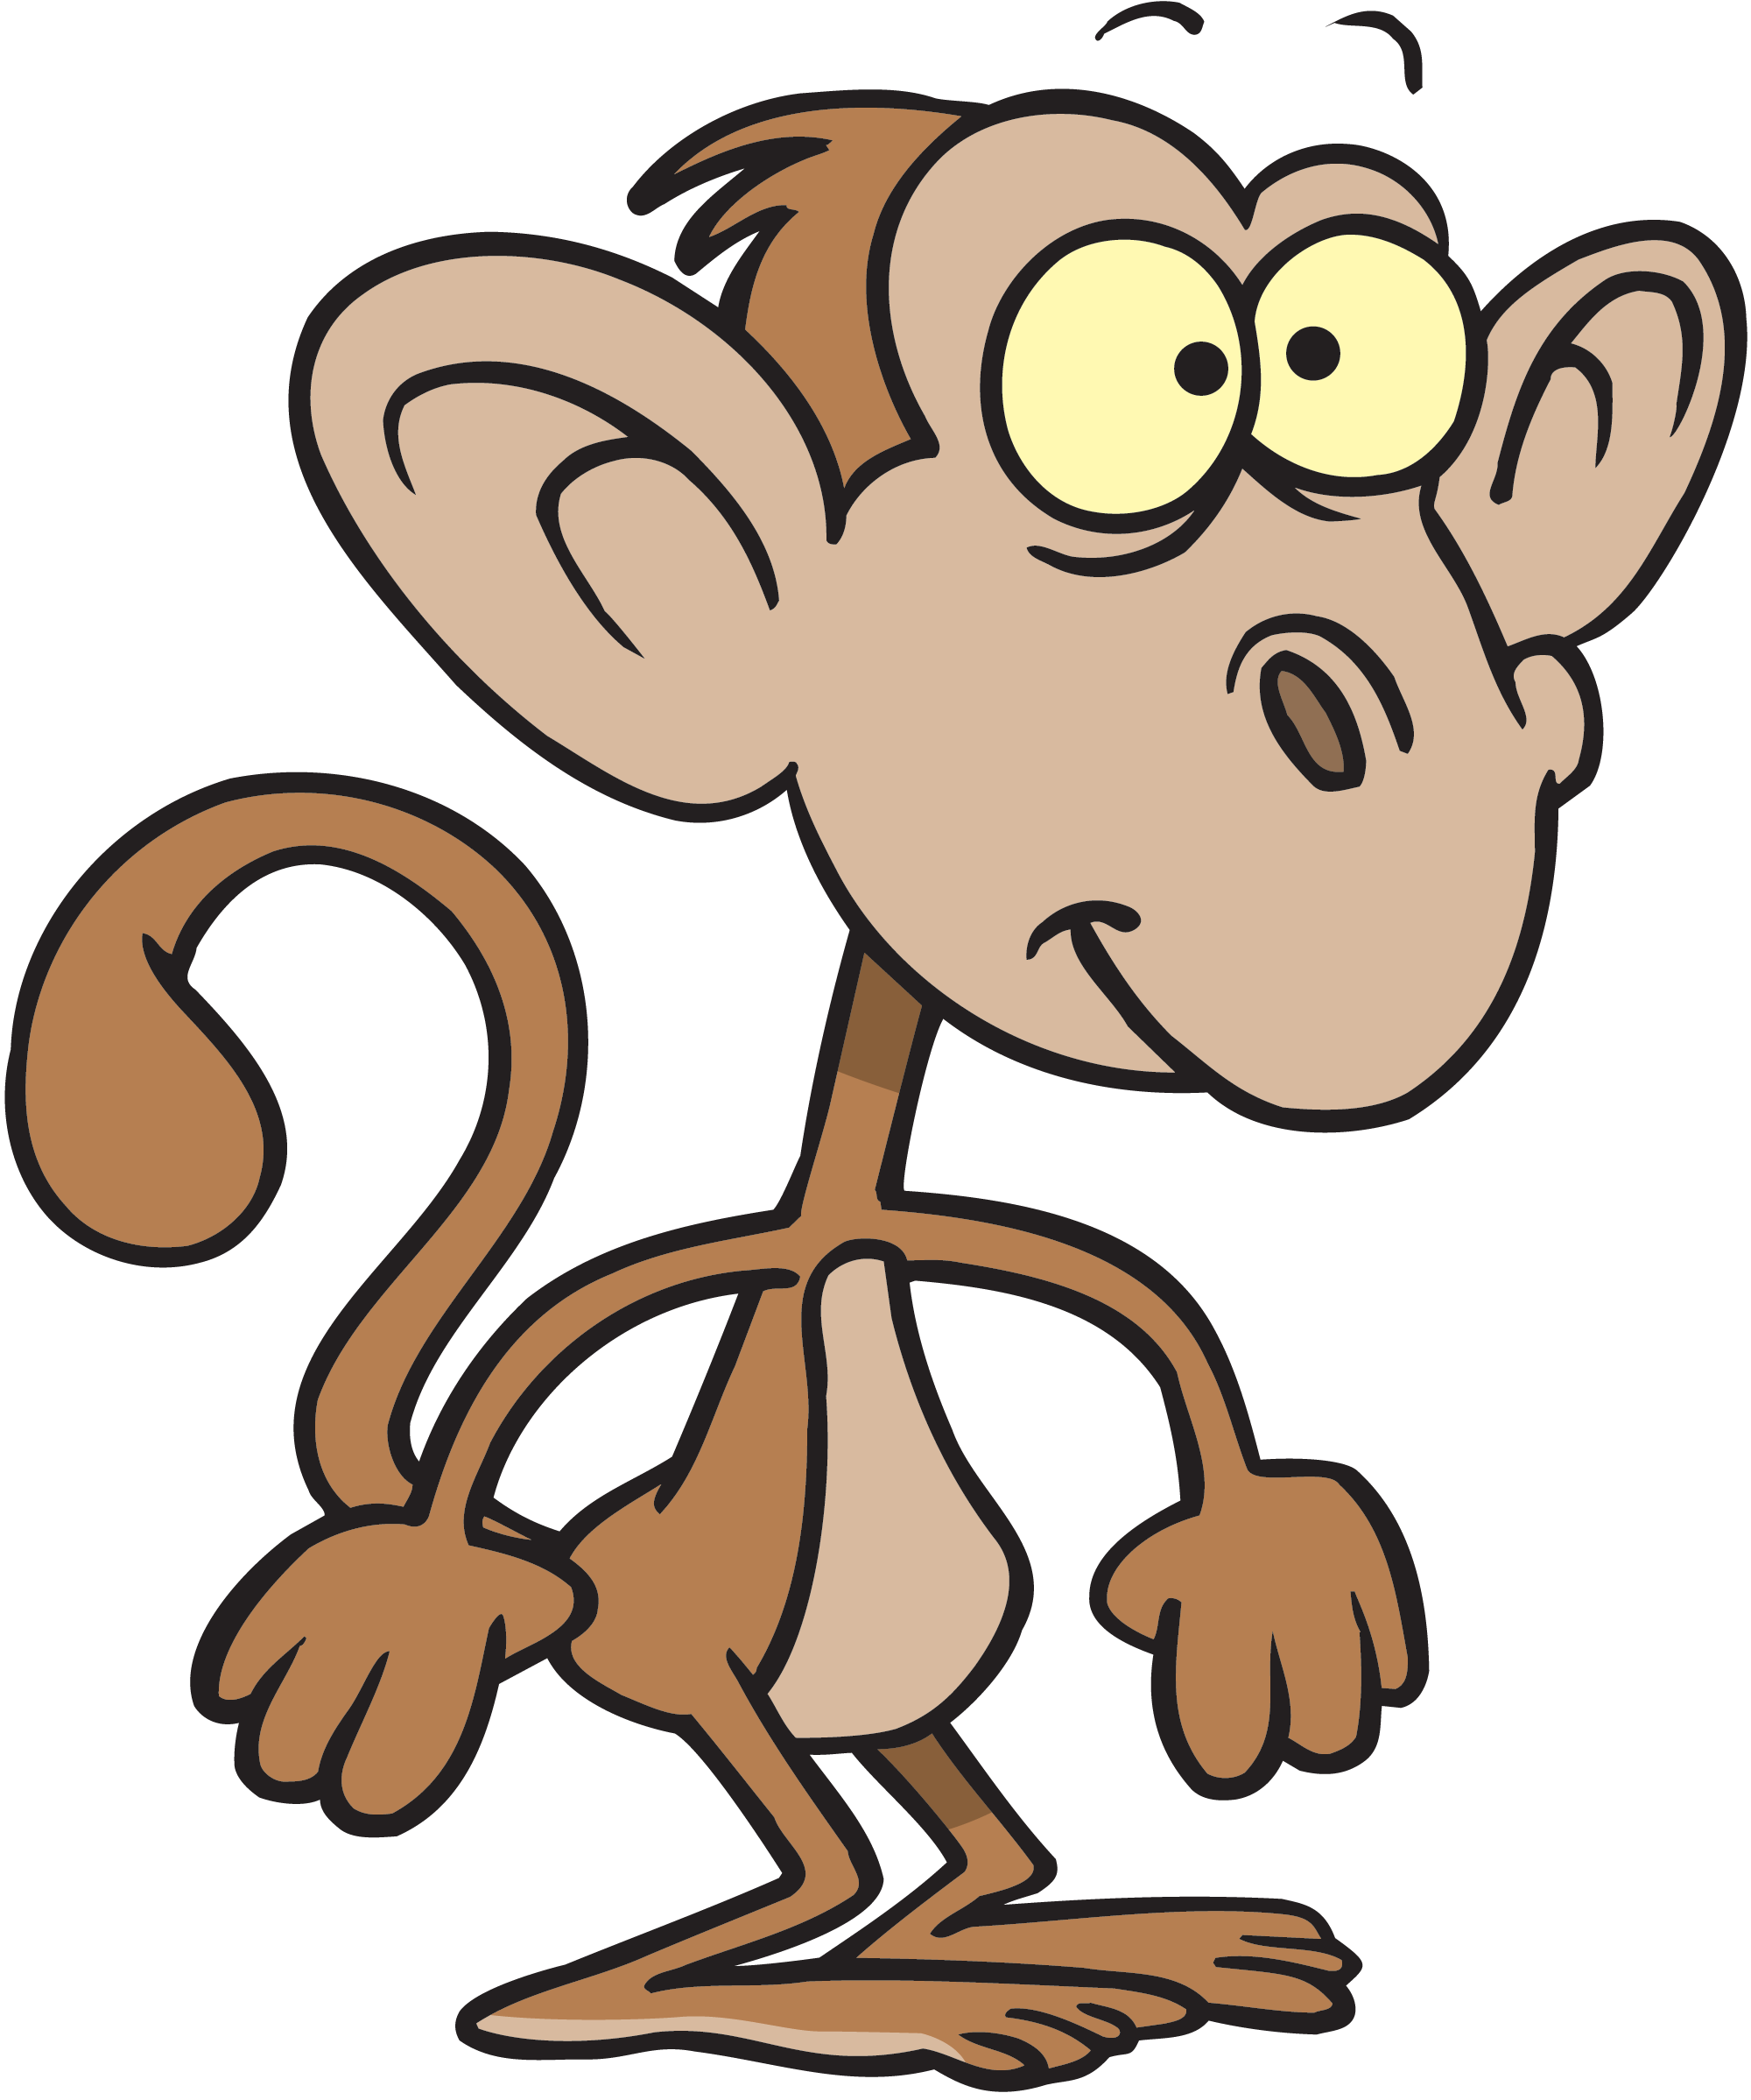 free clipart monkey cartoon - photo #49